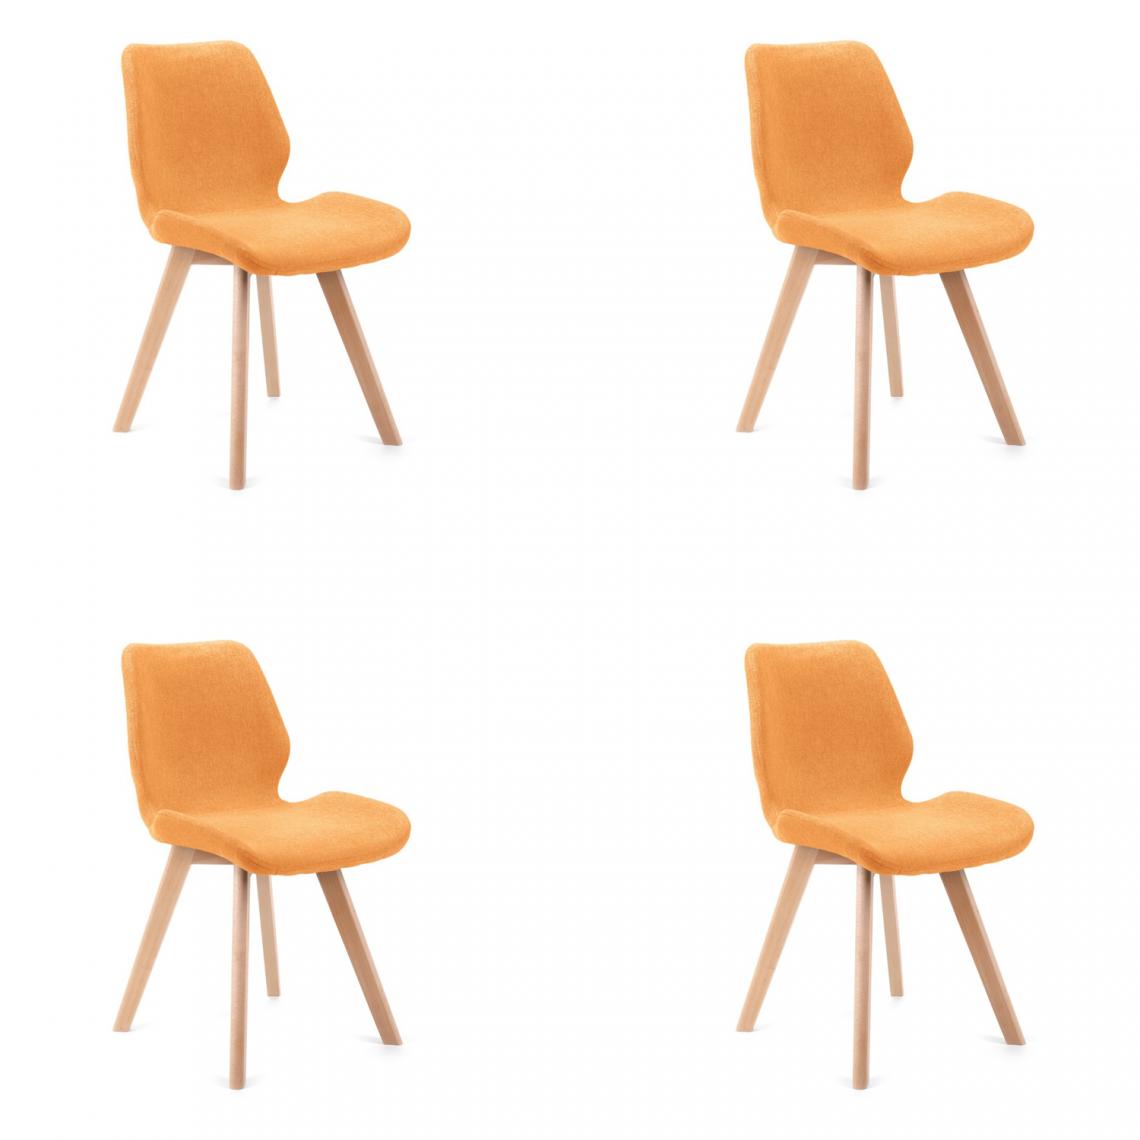 Hucoco - BROLI - Chaise rembourrée 4 pcs style moderne salon/salle à manger - 82.5x40x53 - Pieds en bois - Orange - Chaises